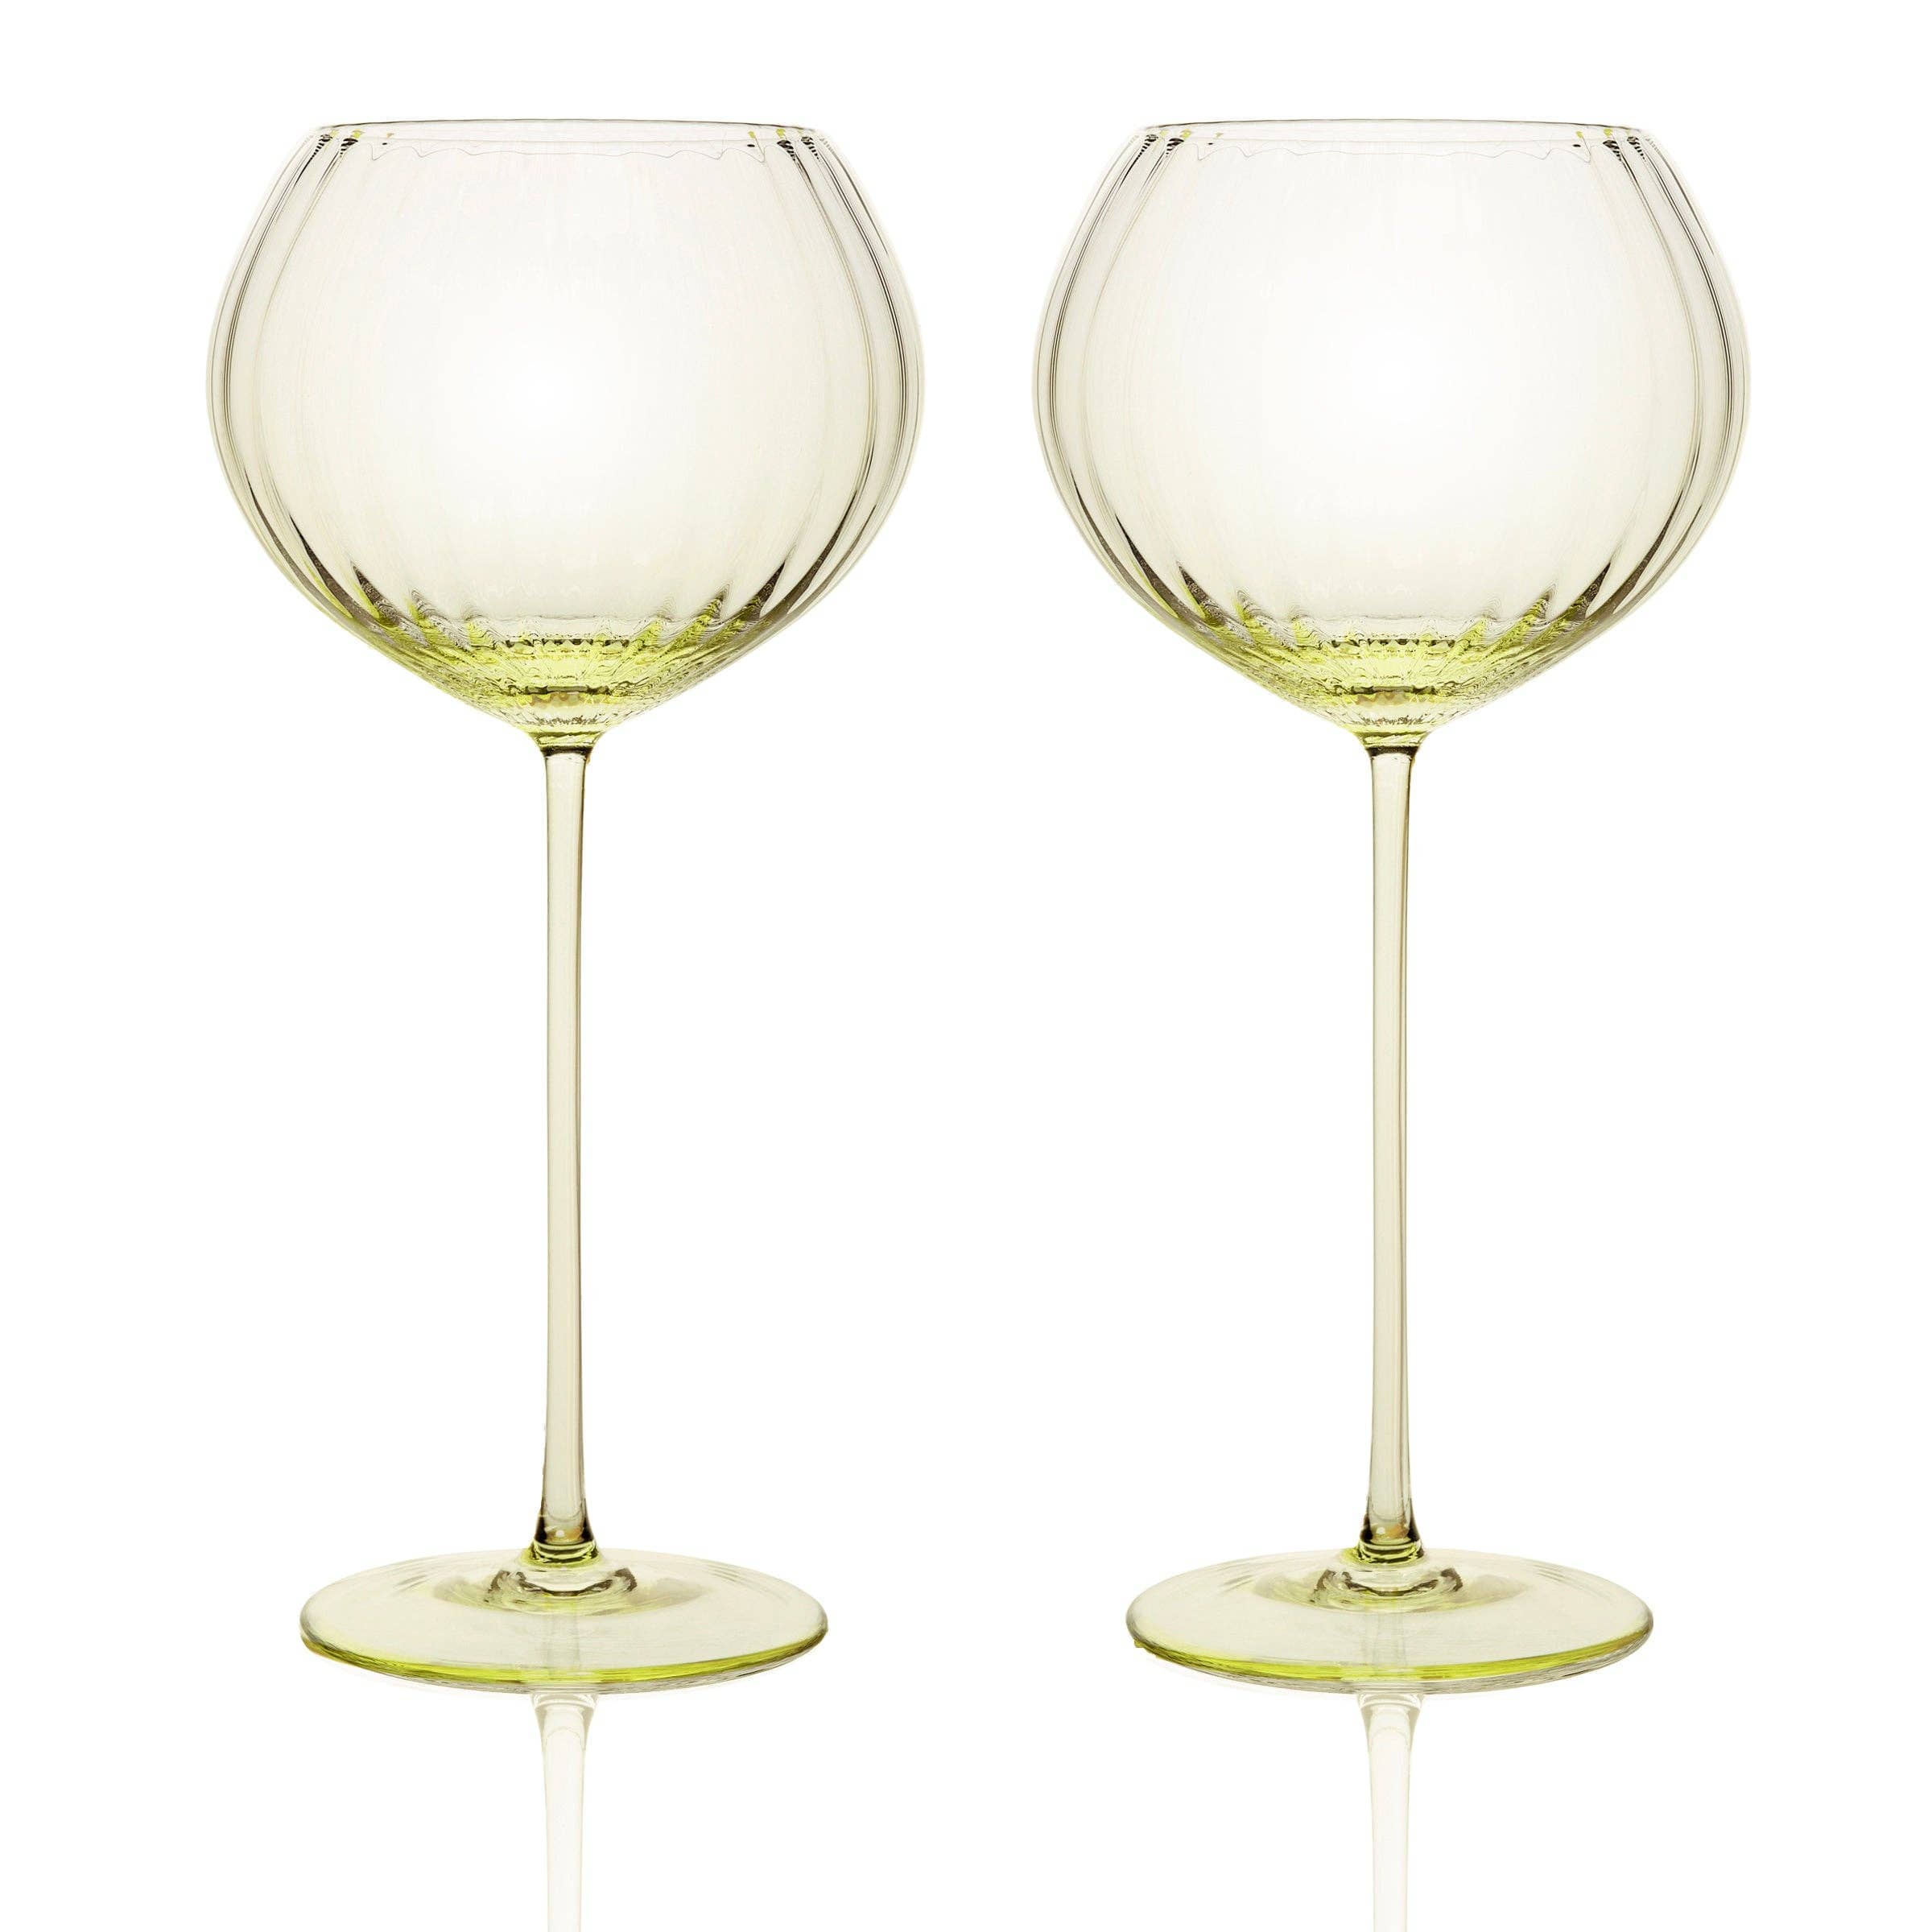 https://www.vividchill.com/cdn/shop/files/quinn-citrine-red-wine-glasses-set2-tabletop-caskata-597965_2400x.jpg?v=1699560557